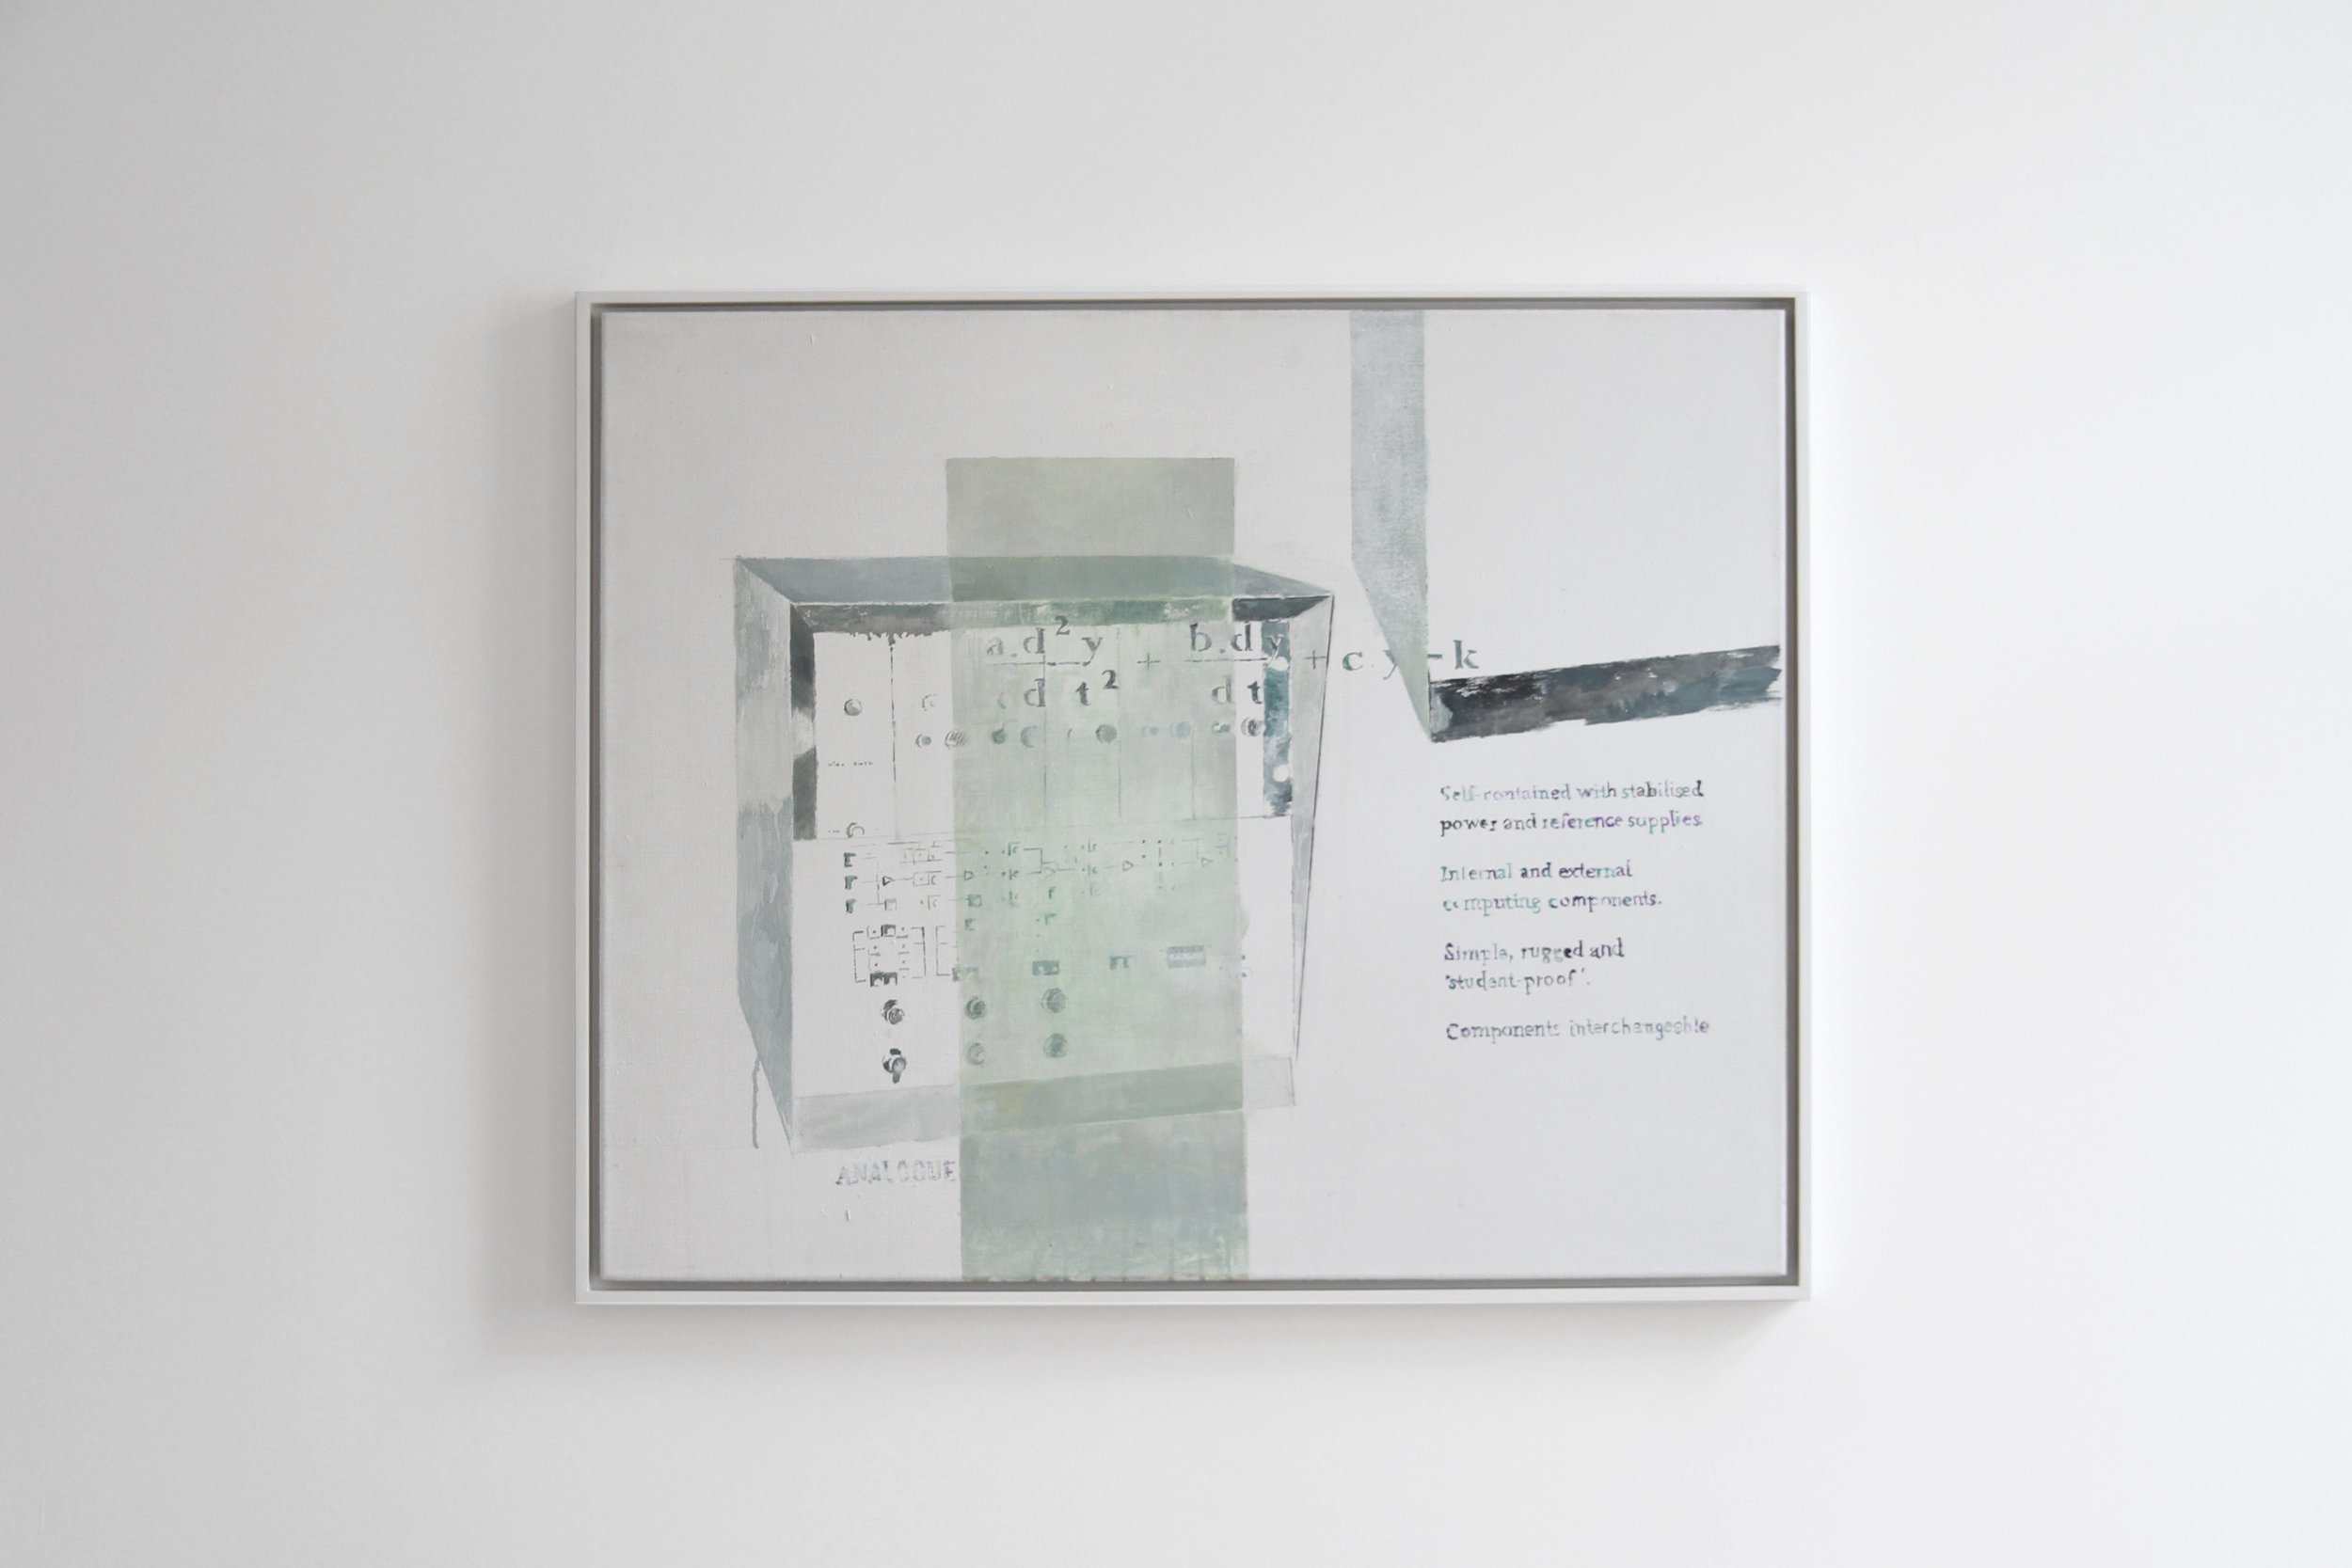  Agnes Fuchs, ANALOGUE TUTOR TY 963/02, 2013, Acrylic on canvas, 90 x 75 cm 